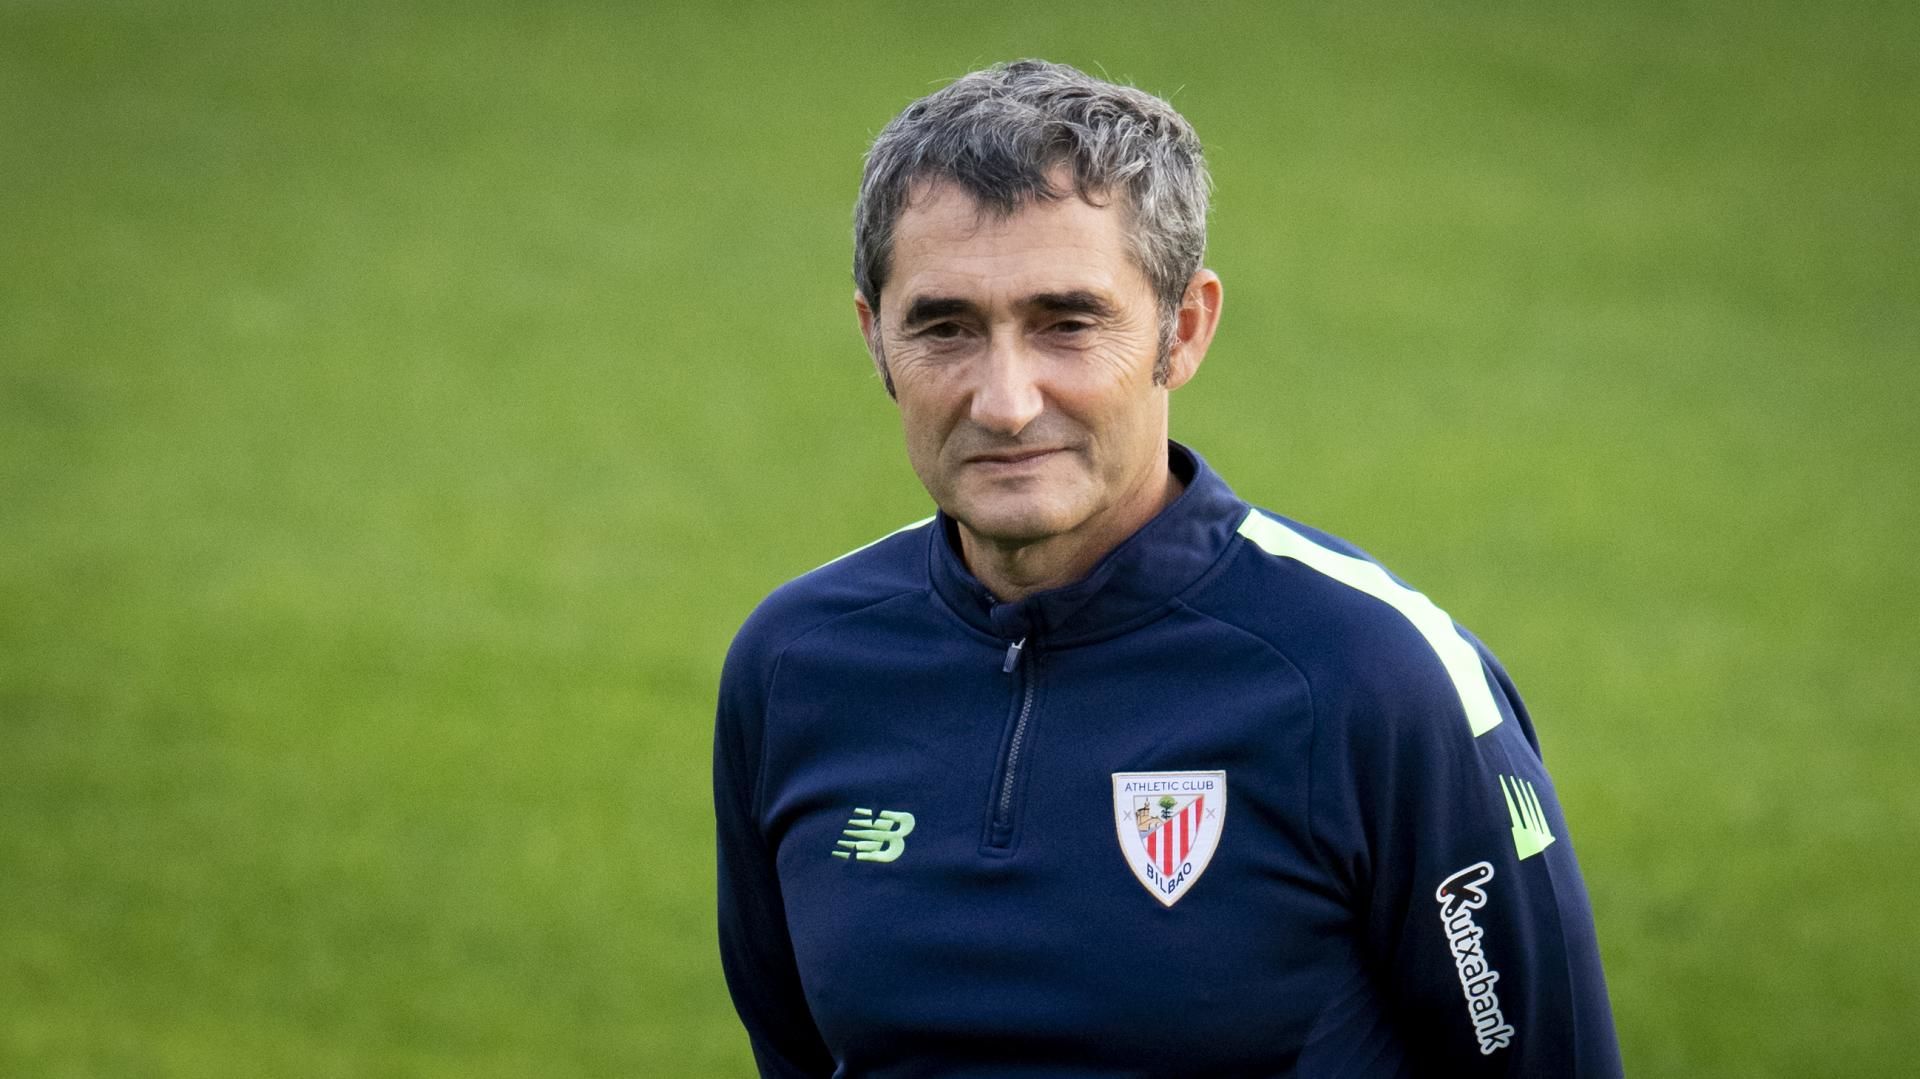 El Athletic extendió el contrato de su entrenador Ernesto Valverde